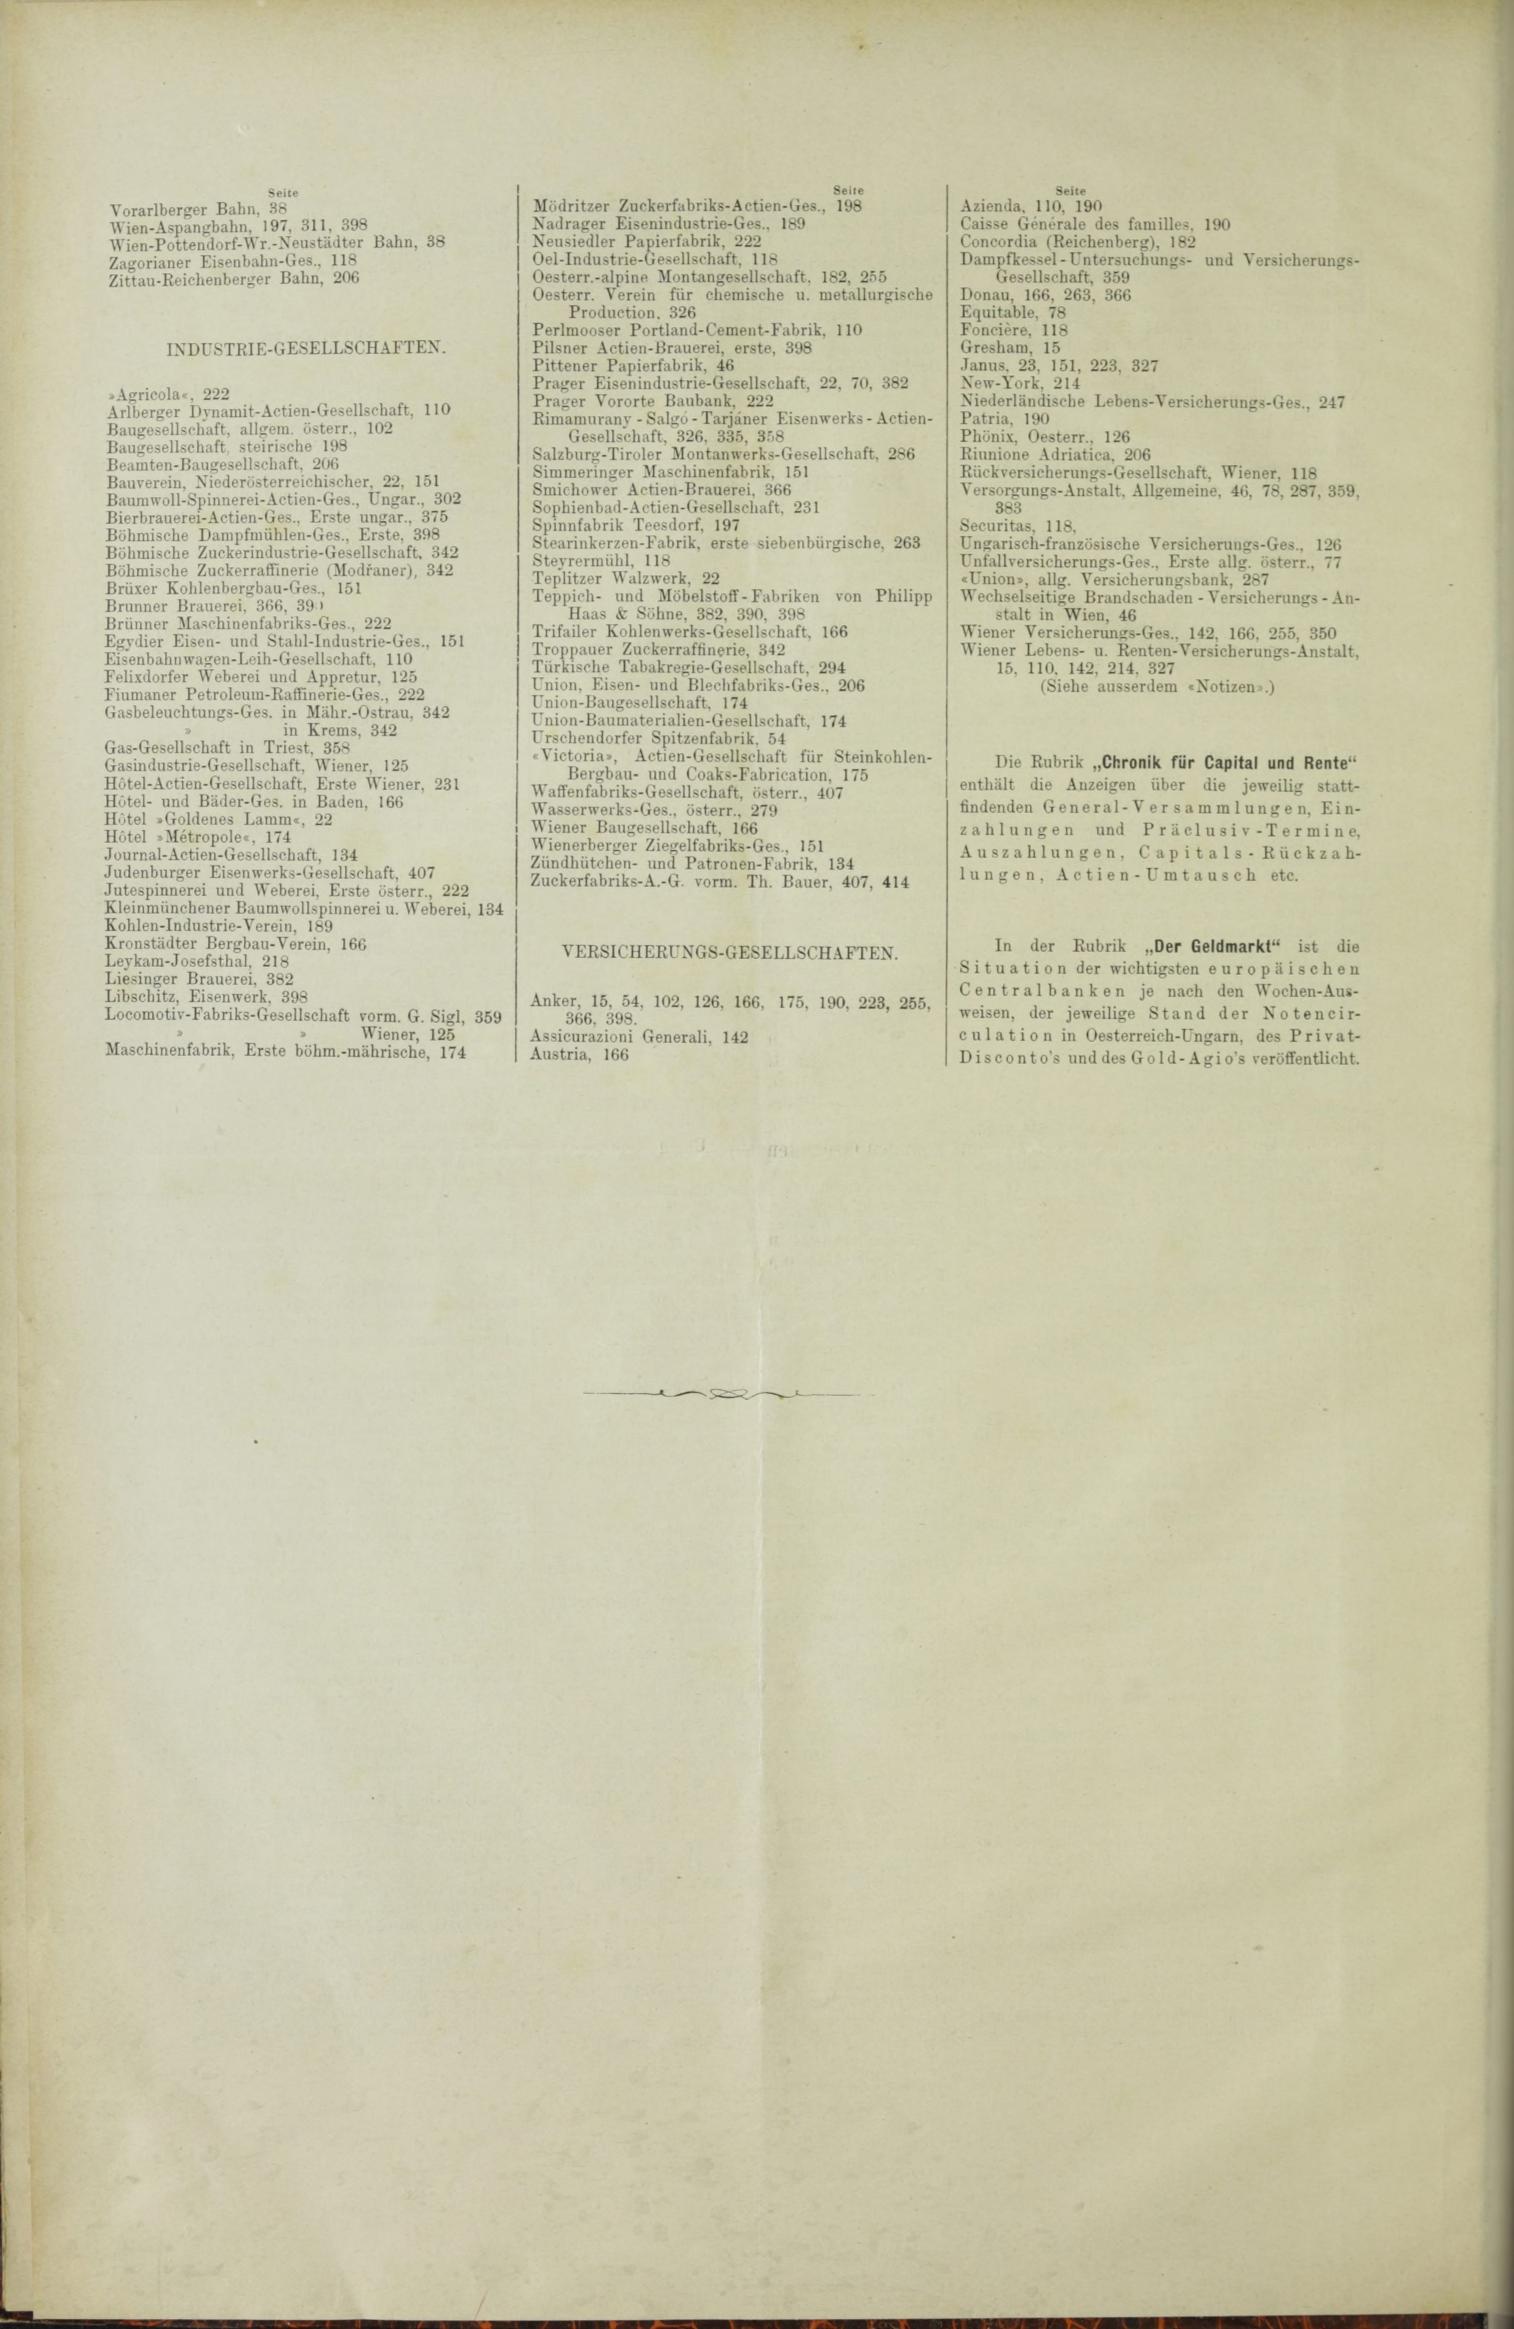 Der Tresor 27.05.1886 - Seite 12